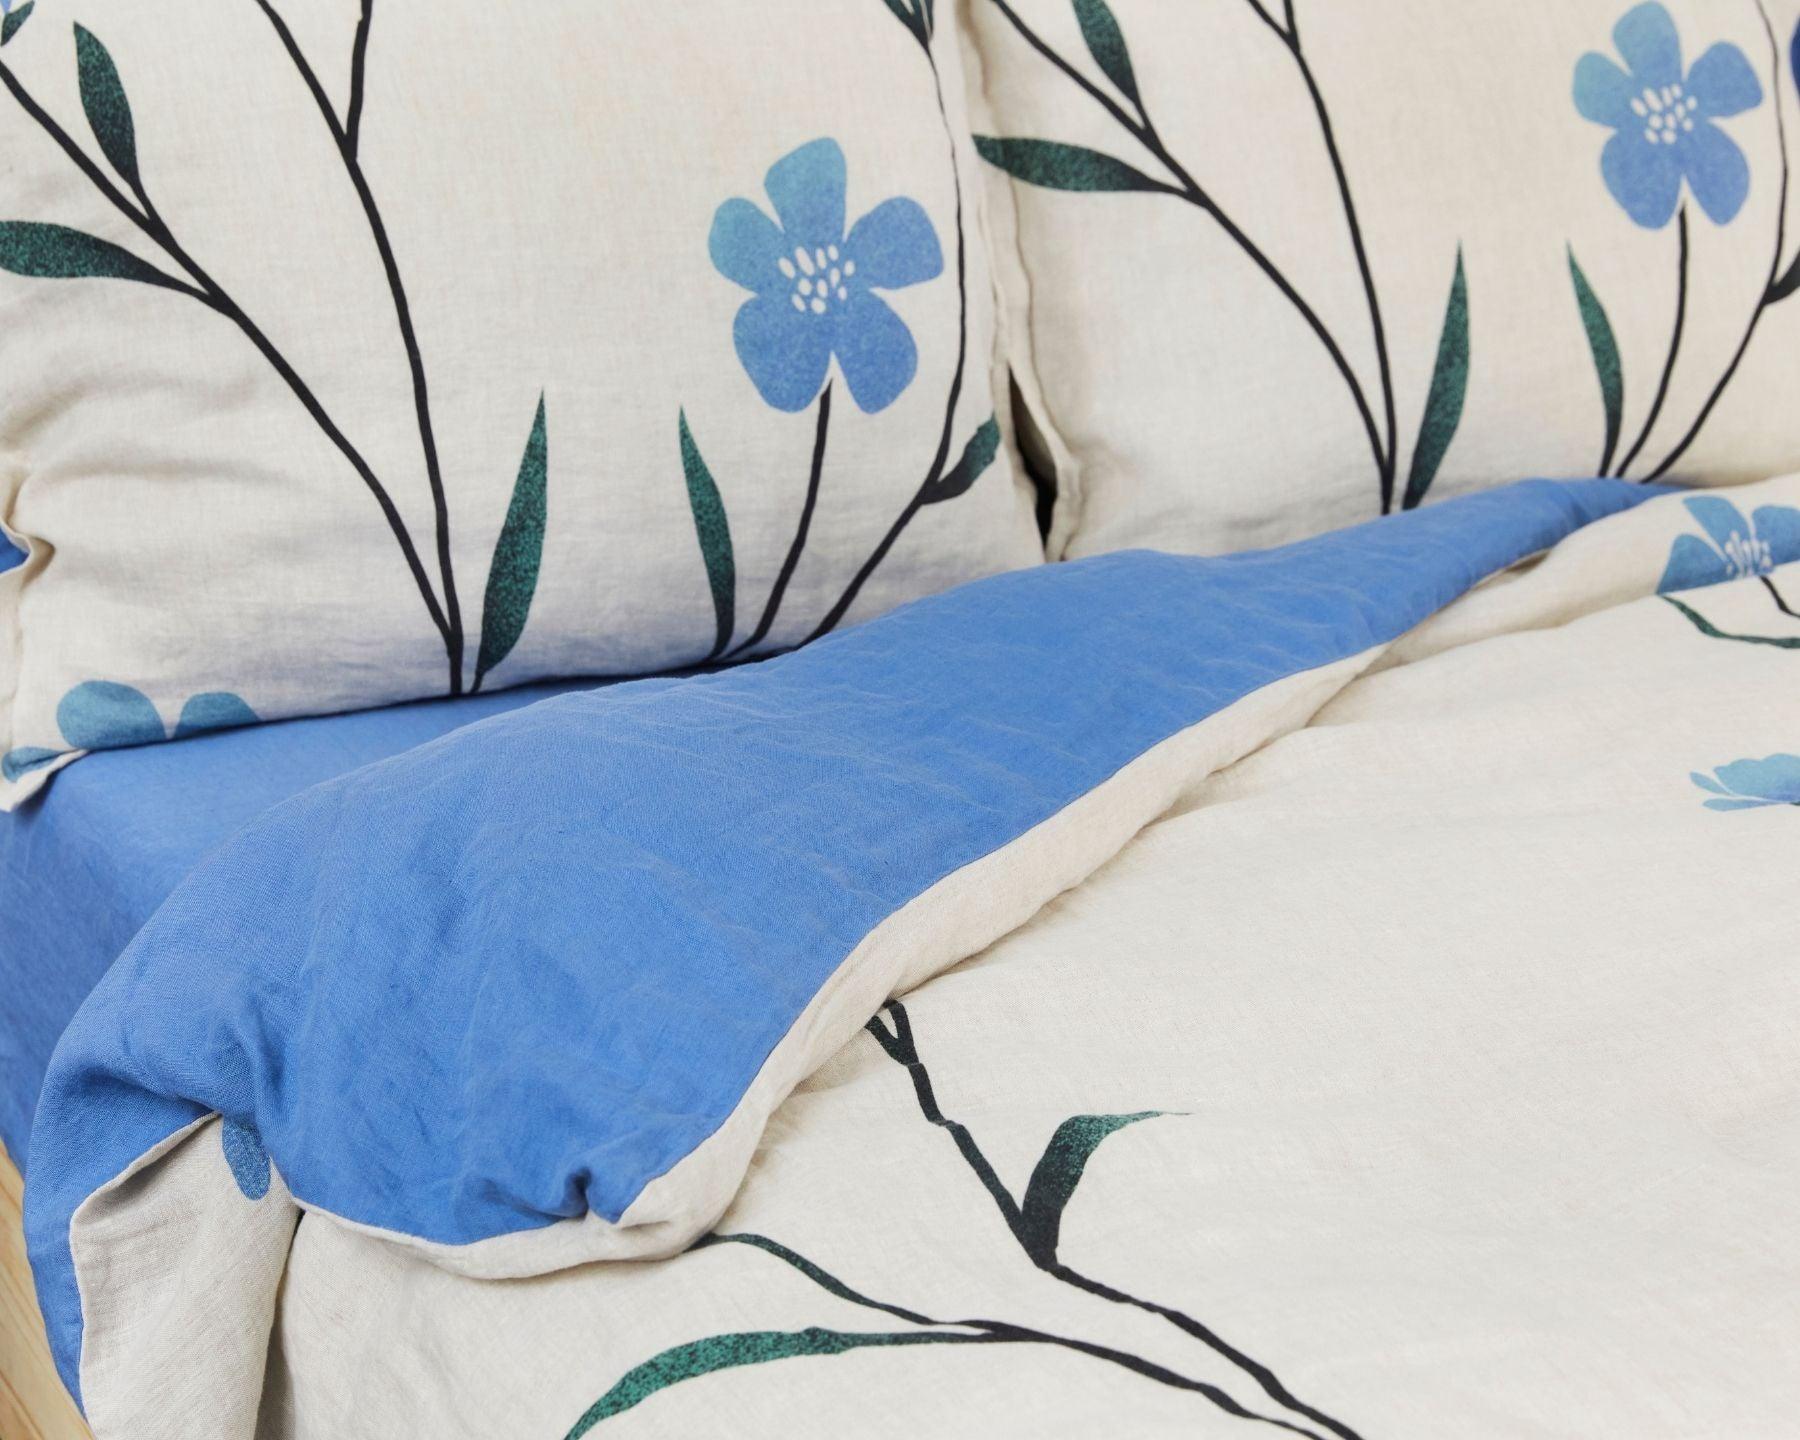 Organic European linen duvet cover on natural flax linen with Scandinavian floral design featuring blue flowers - Twin / Standard, Full/Queen / Standard, King/Cal-King / Standard, King/Cal-King / King